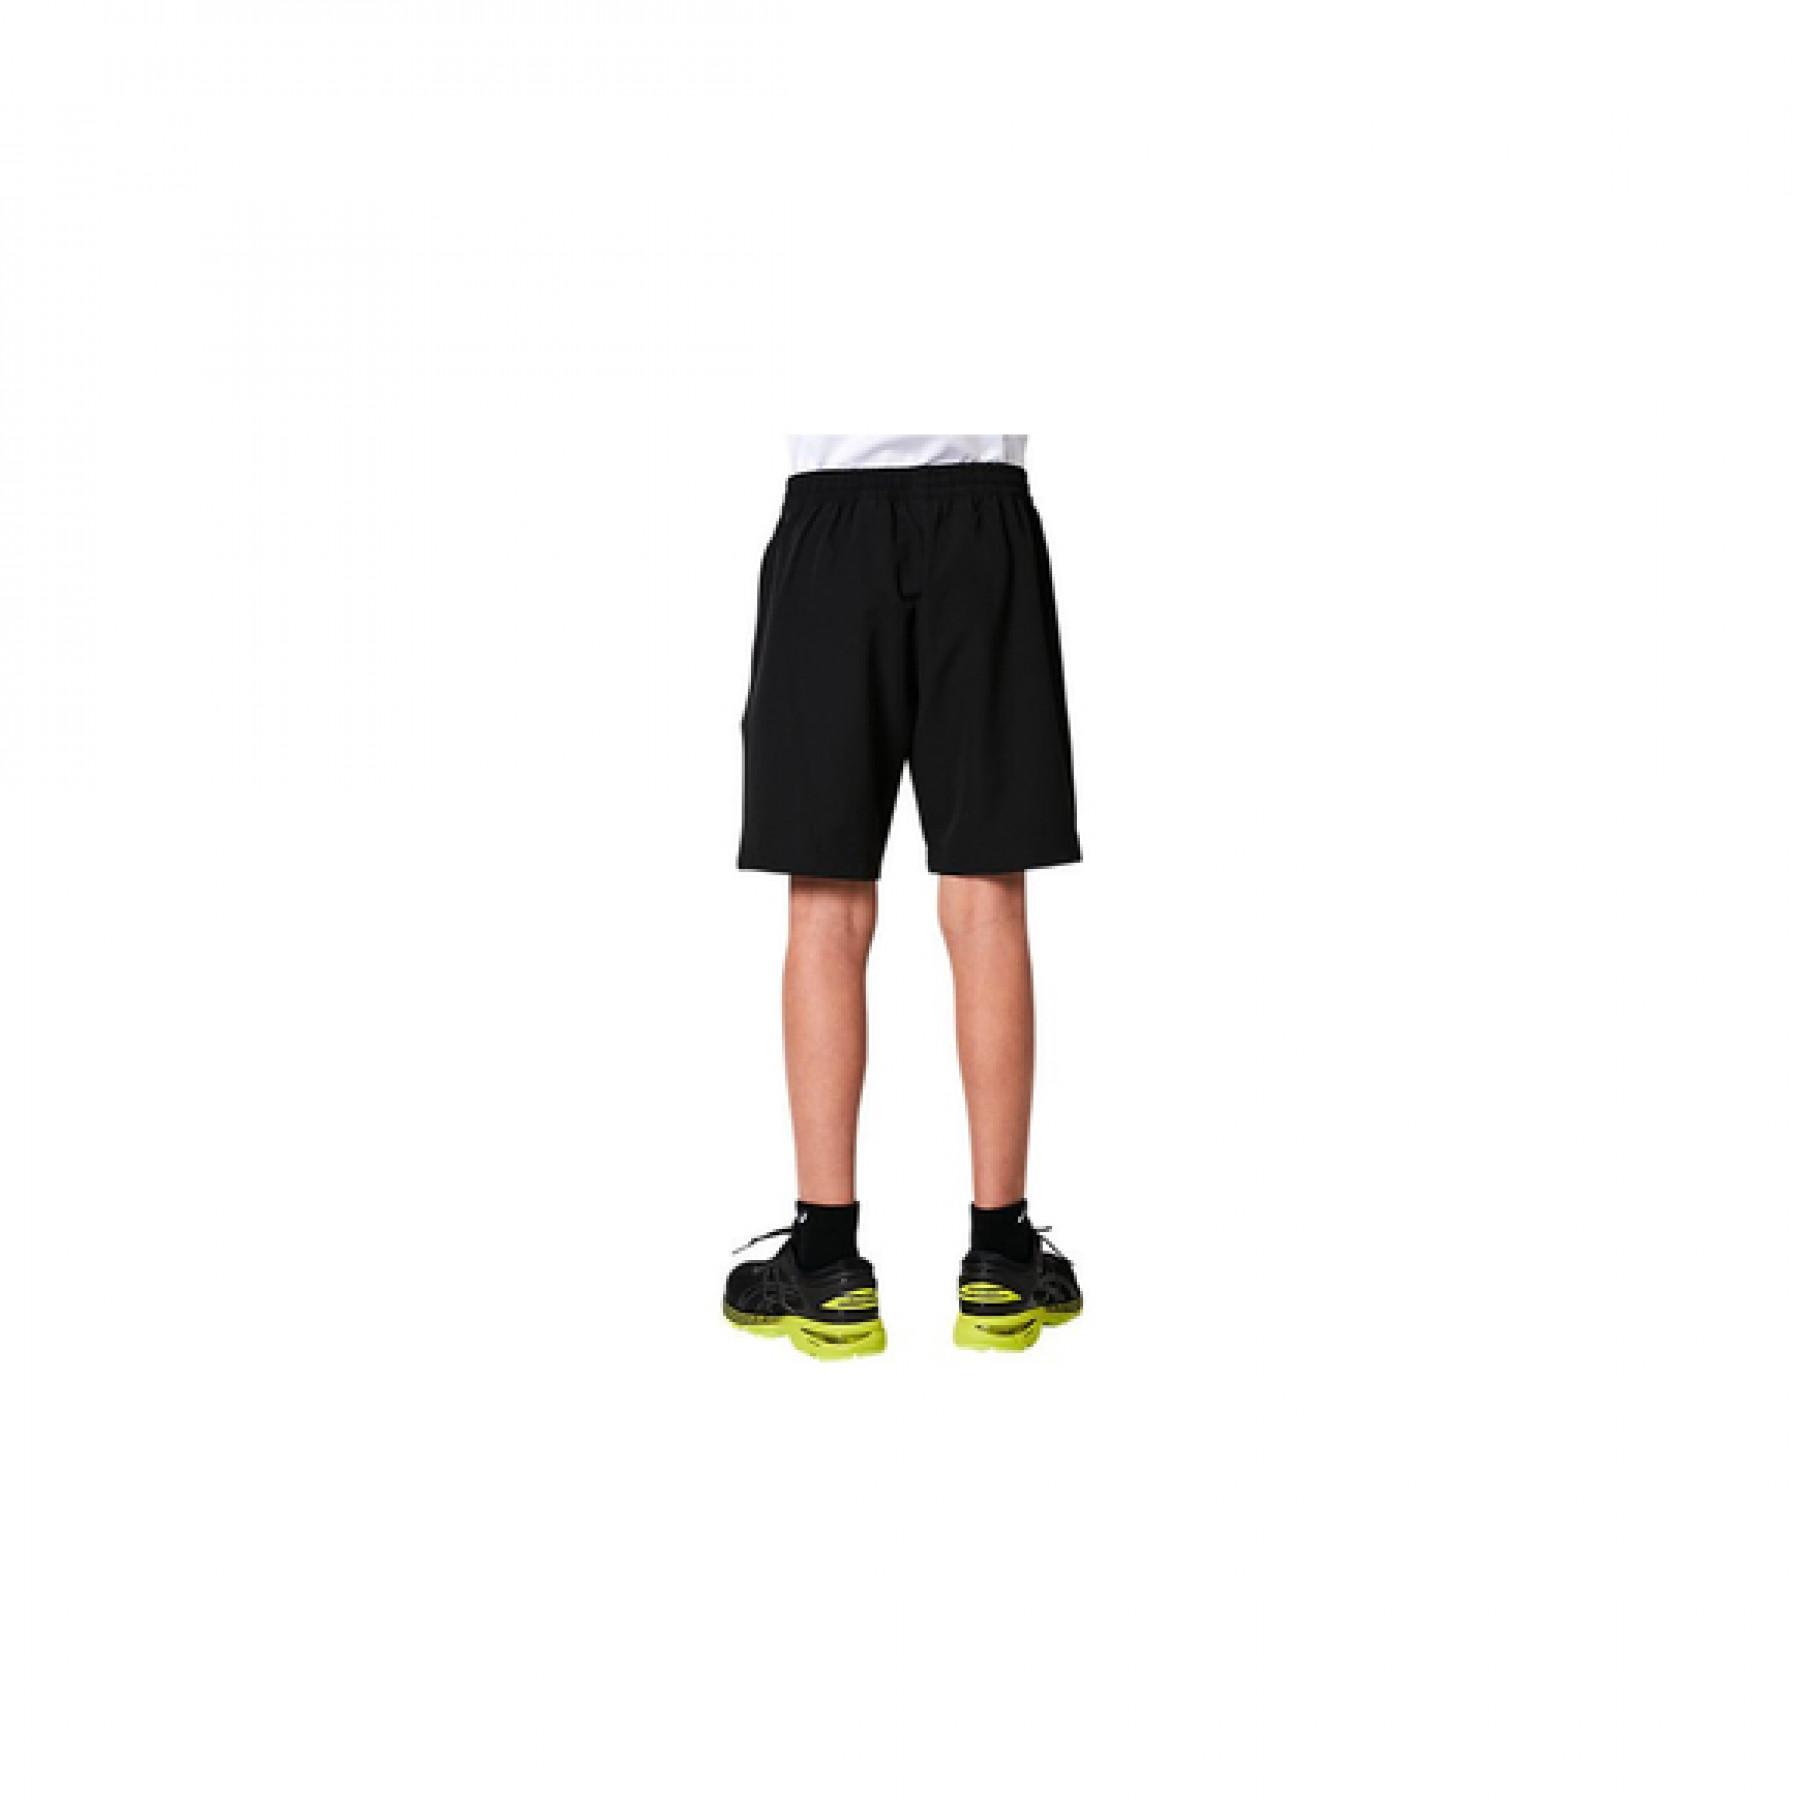 Children's shorts Asics b Gpx